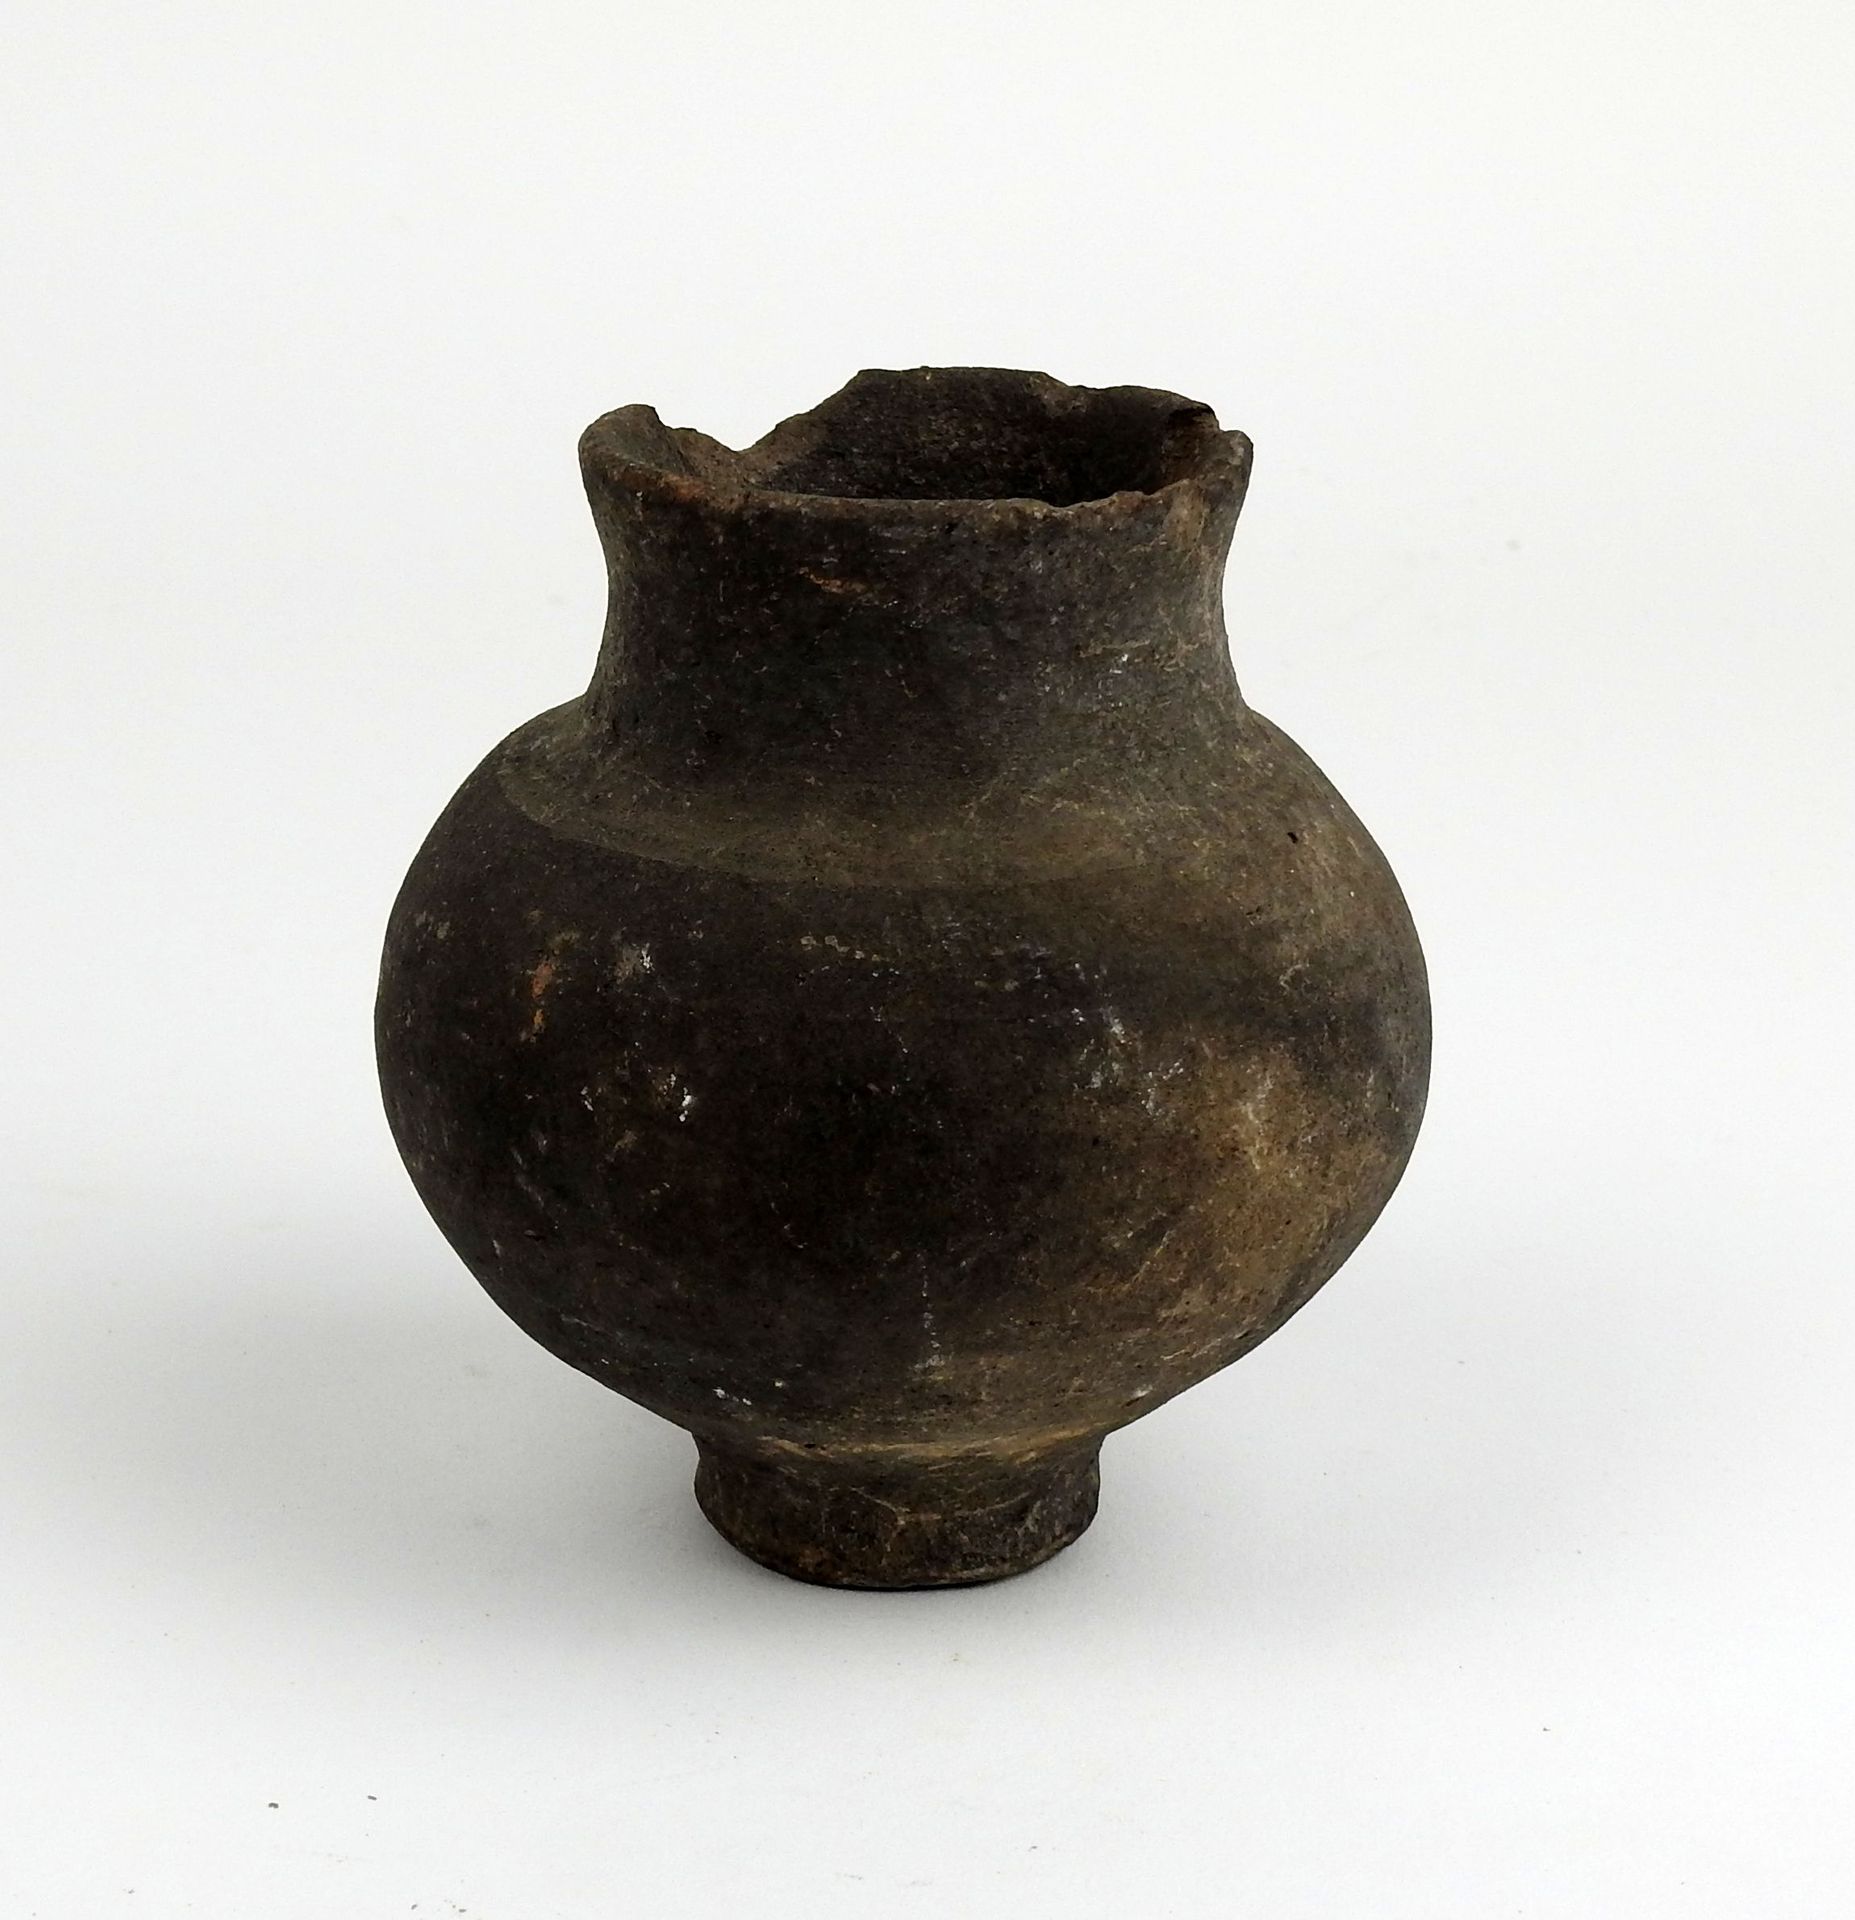 Null 花瓶有球状的瓶身和喇叭形的颈部，有一个标签显示 "在巴黎塞纳河发现的加洛-罗马花瓶"。

黑色赤土9厘米

原史上的铁器时代